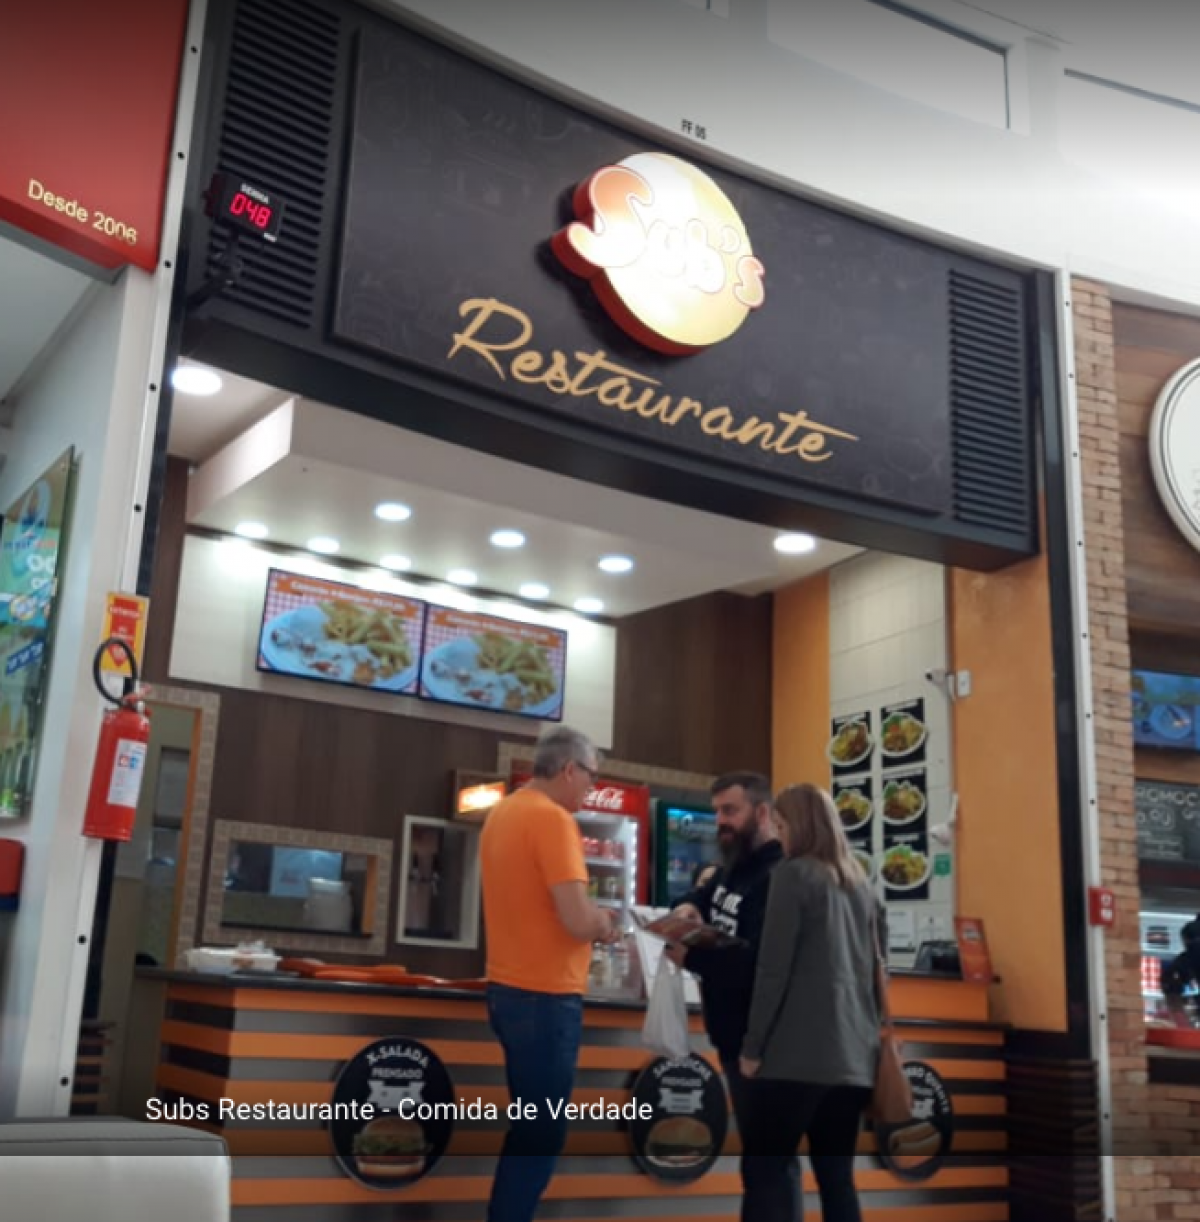 Vendo Restaurante brasileiro em um shopping